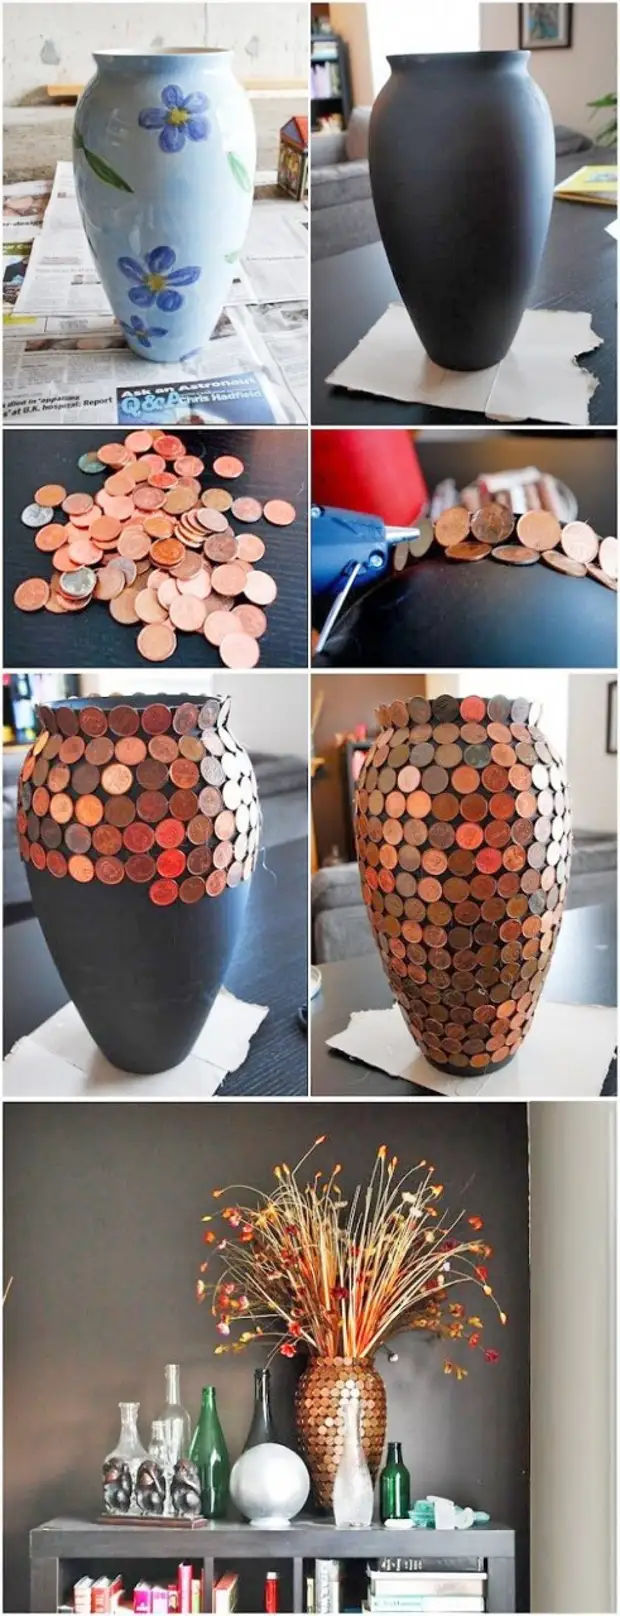 Almindelige vaser kan omdannes til at tiltrække opmærksomhed, interessante ting. Tilslut dem med mønter - lettere enkel, og effekten! Design, kreativ, mønt, dekoration